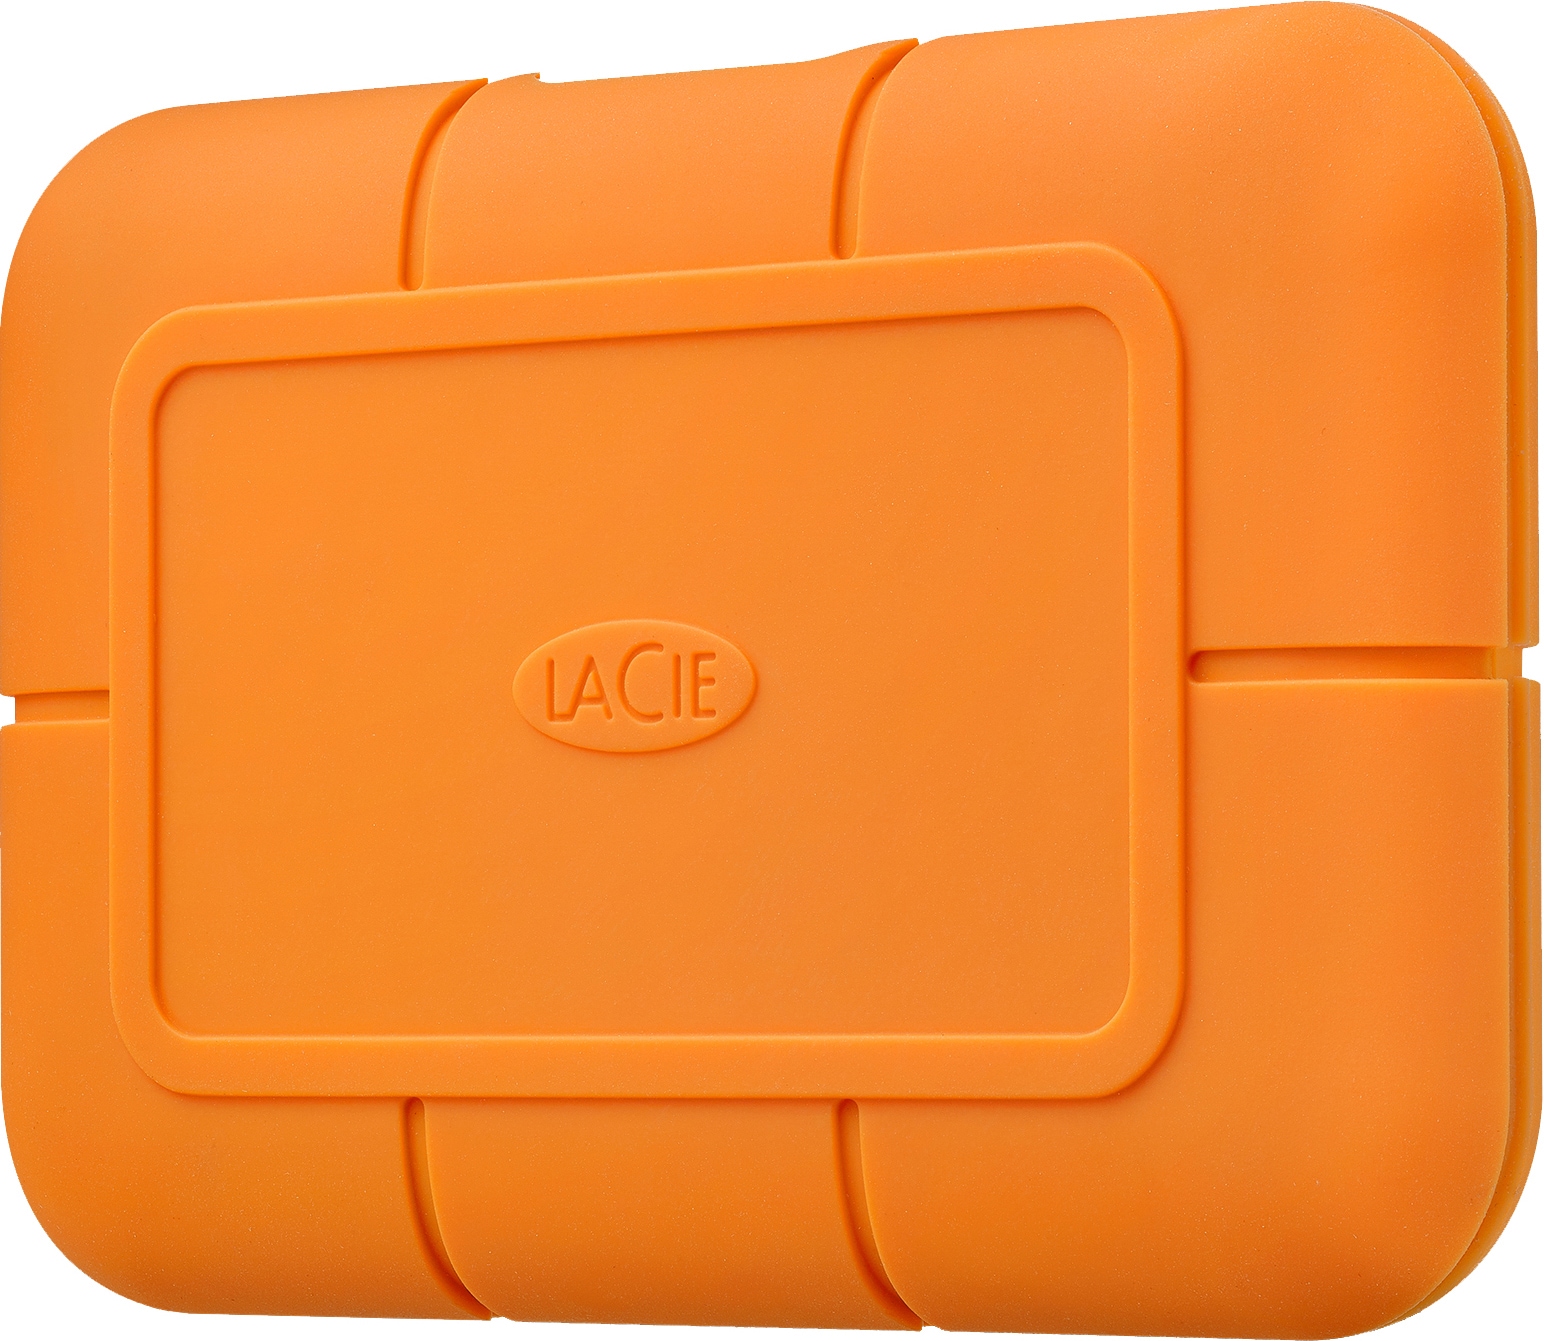 LaCie Rugged SSD 500 GB ekstern SSD (oransje) - Elkjøp